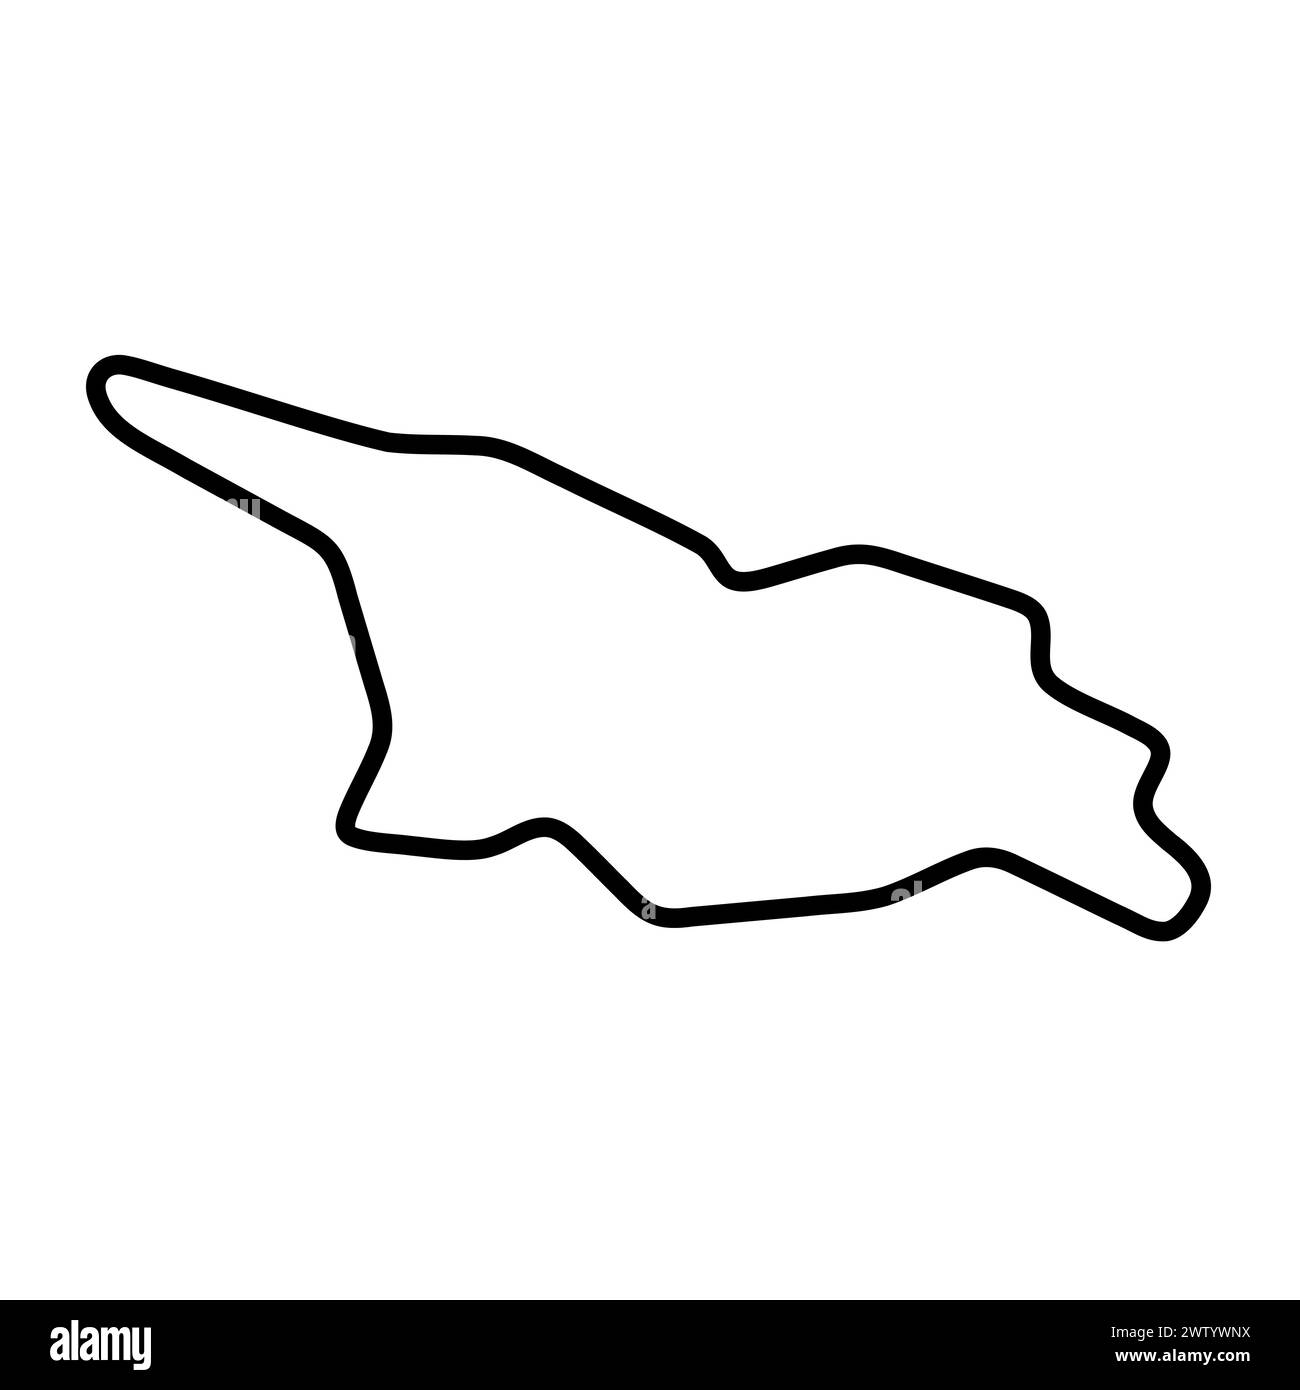 Carte simplifiée du pays de Géorgie. Contour noir épais. Icône vectorielle simple Illustration de Vecteur